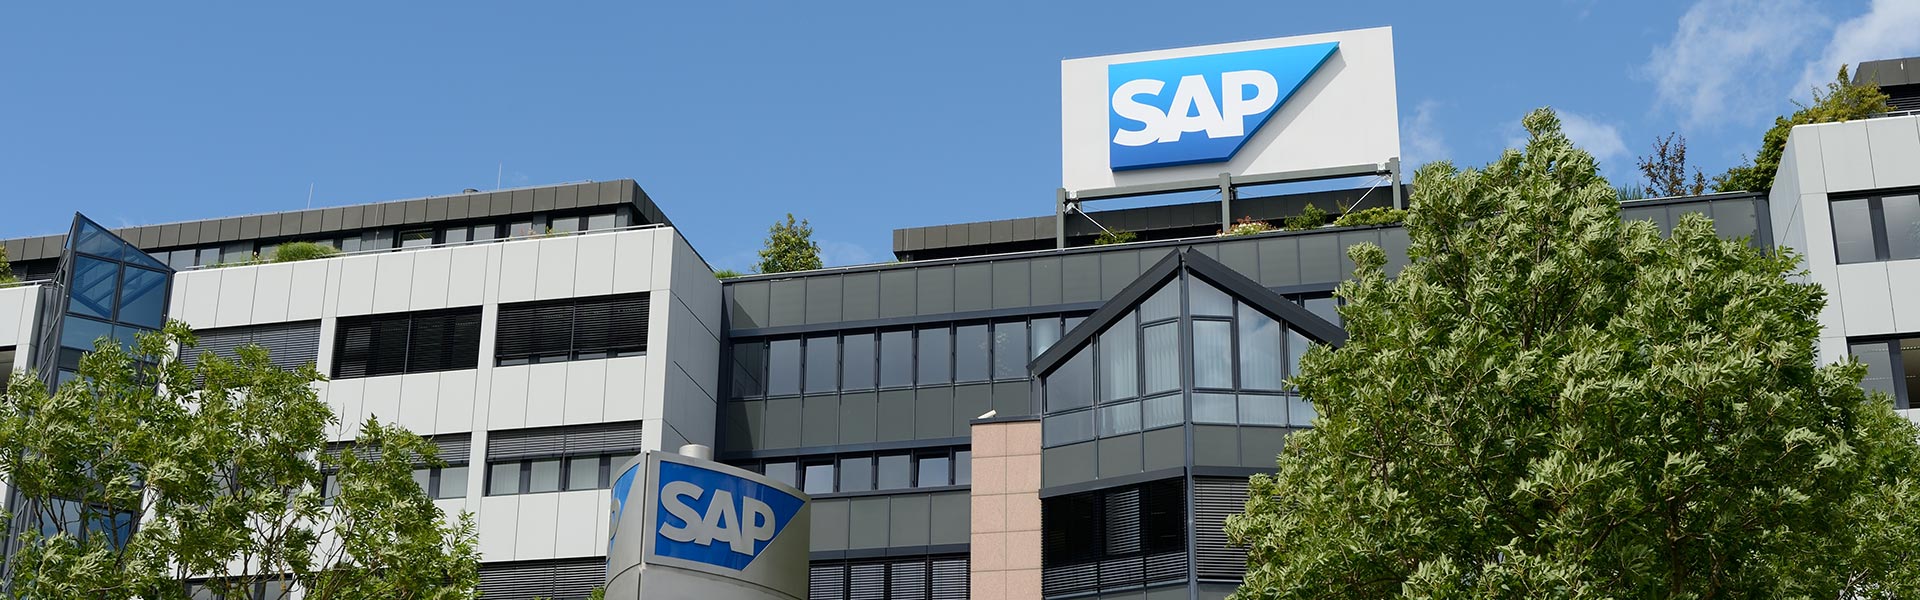 SIEMENS Healthineers choisit RISE with SAP  pour améliorer ses performances